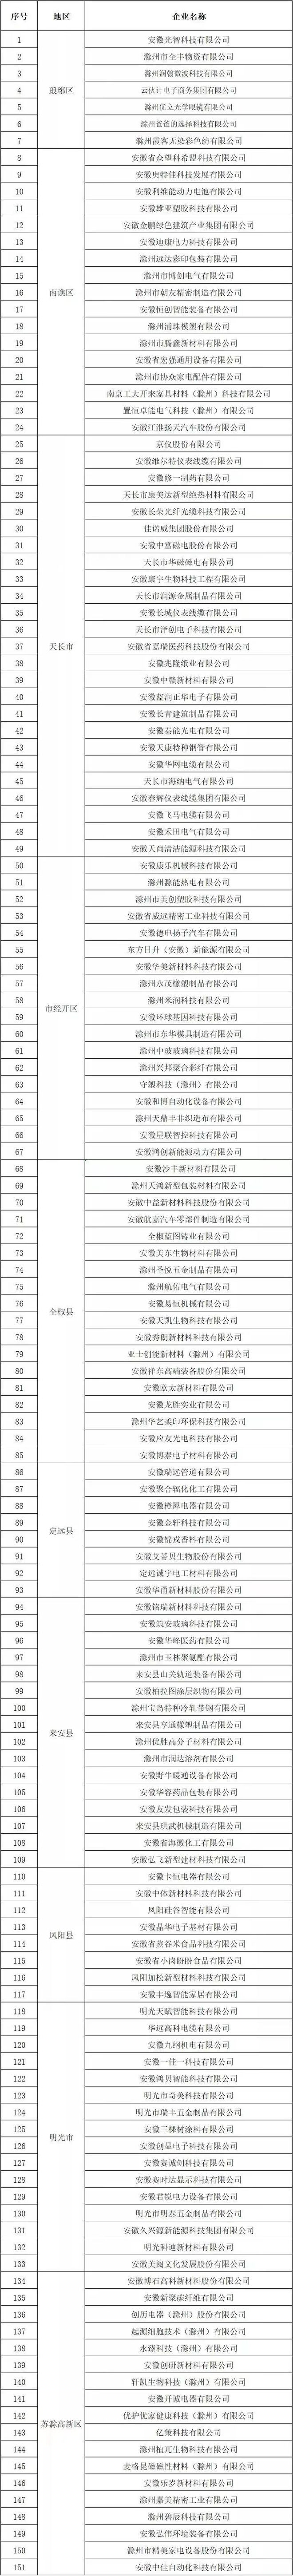 滁州市创新型中小企业名单